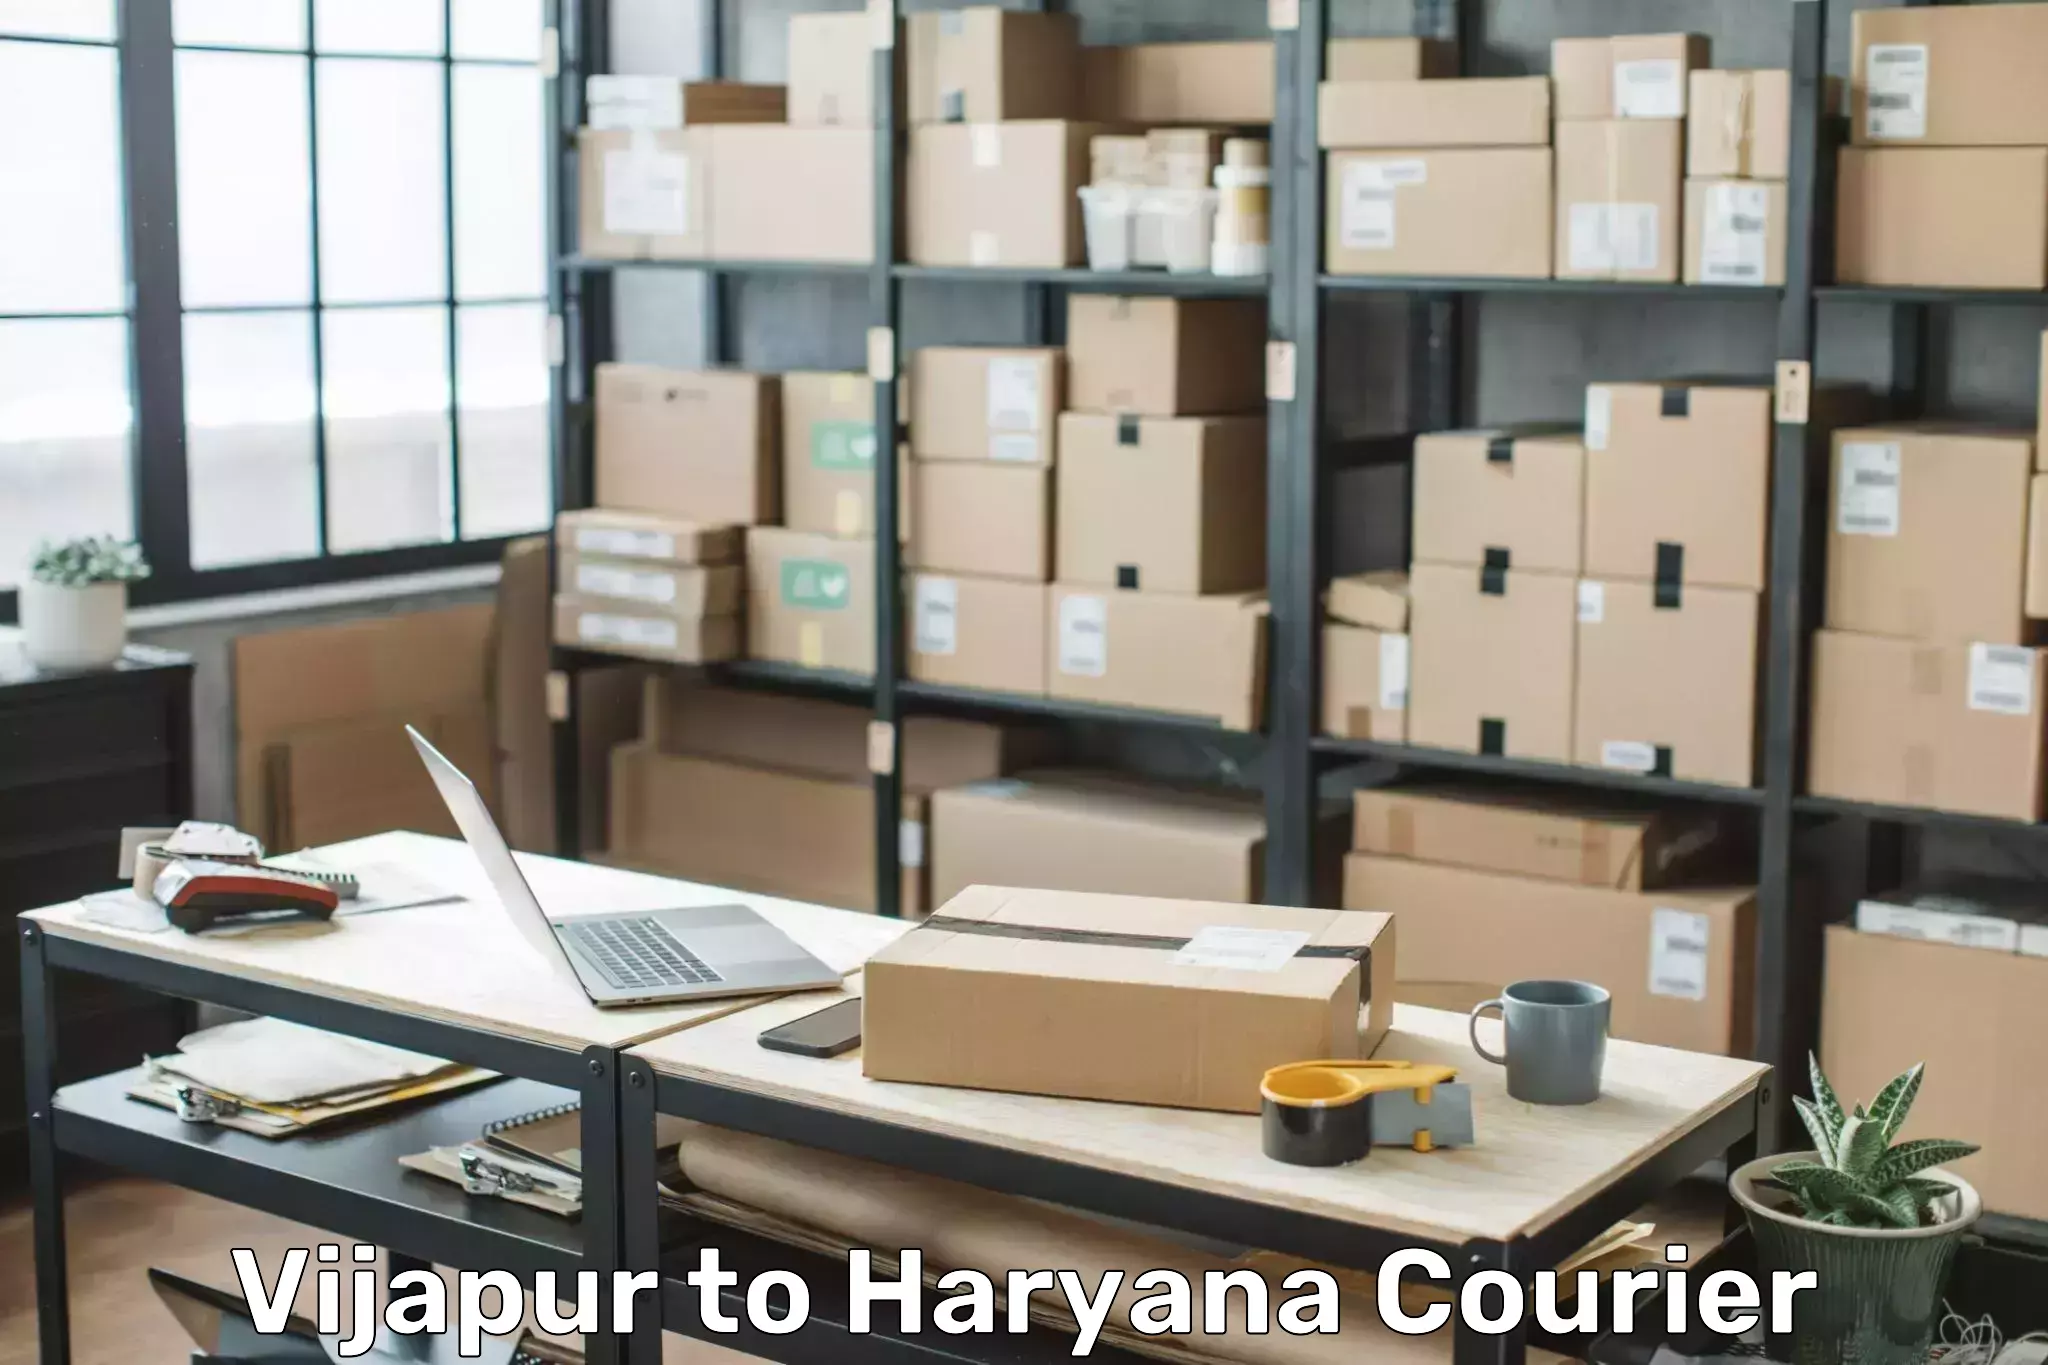 Luggage transport consultancy Vijapur to Haryana